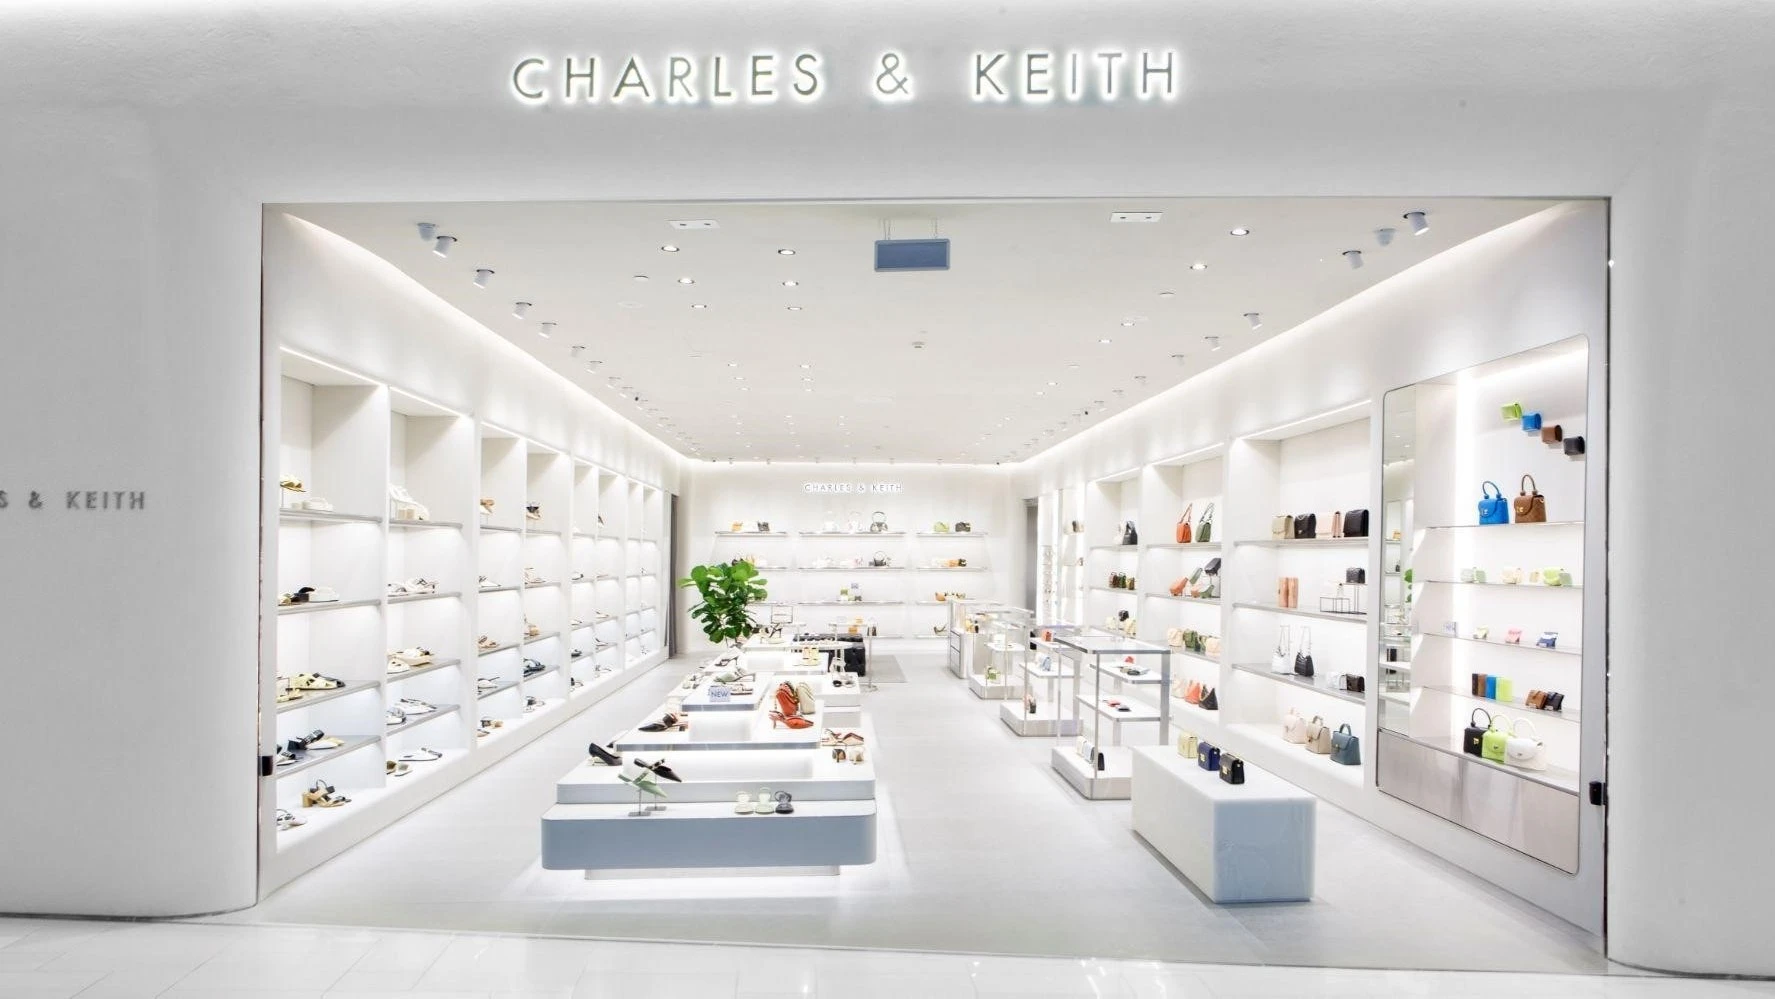 Charles & Keith khai trương cửa hàng thứ 24 tại Aeon Mall Bình Tân